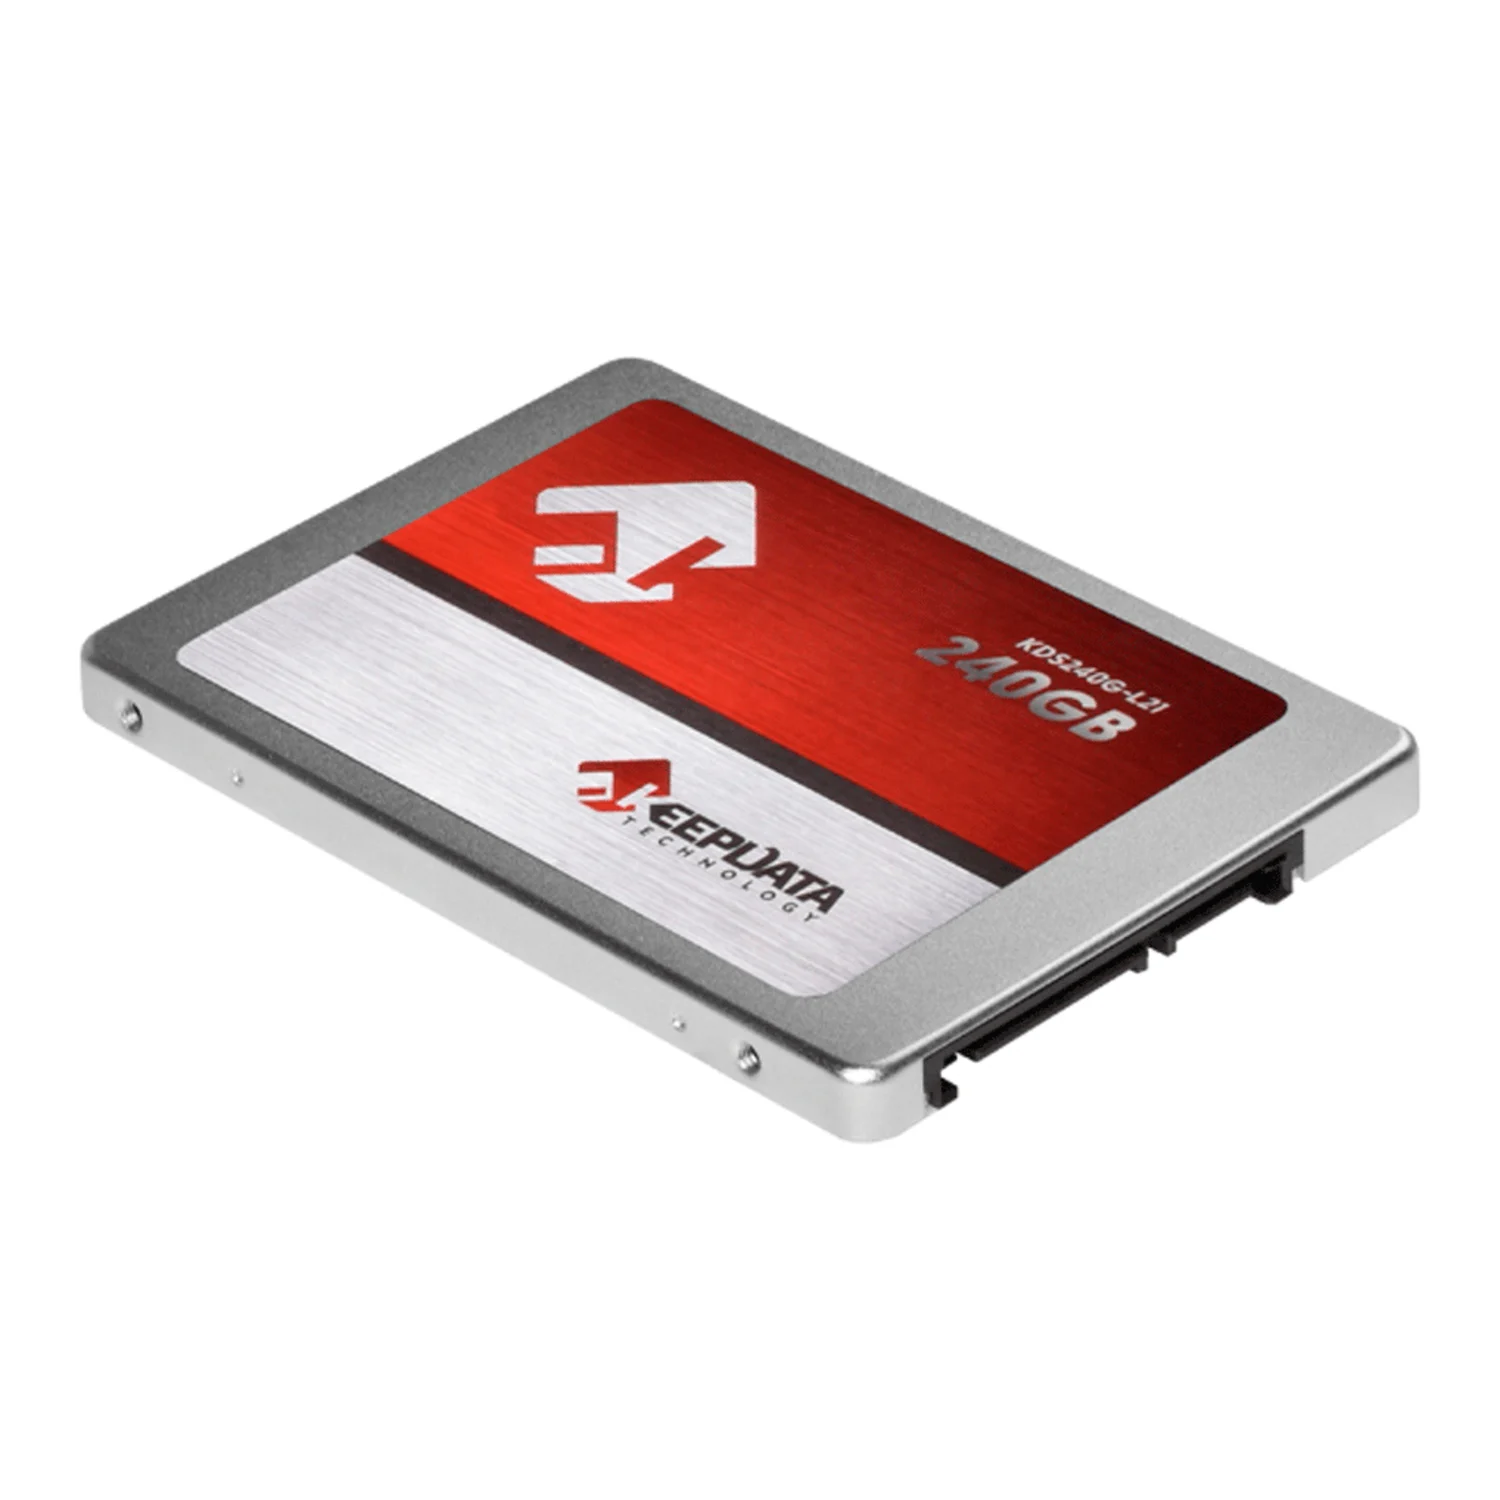 SSD Keepdata 240GB 2.5" SATA 3 - KDS240G-L21